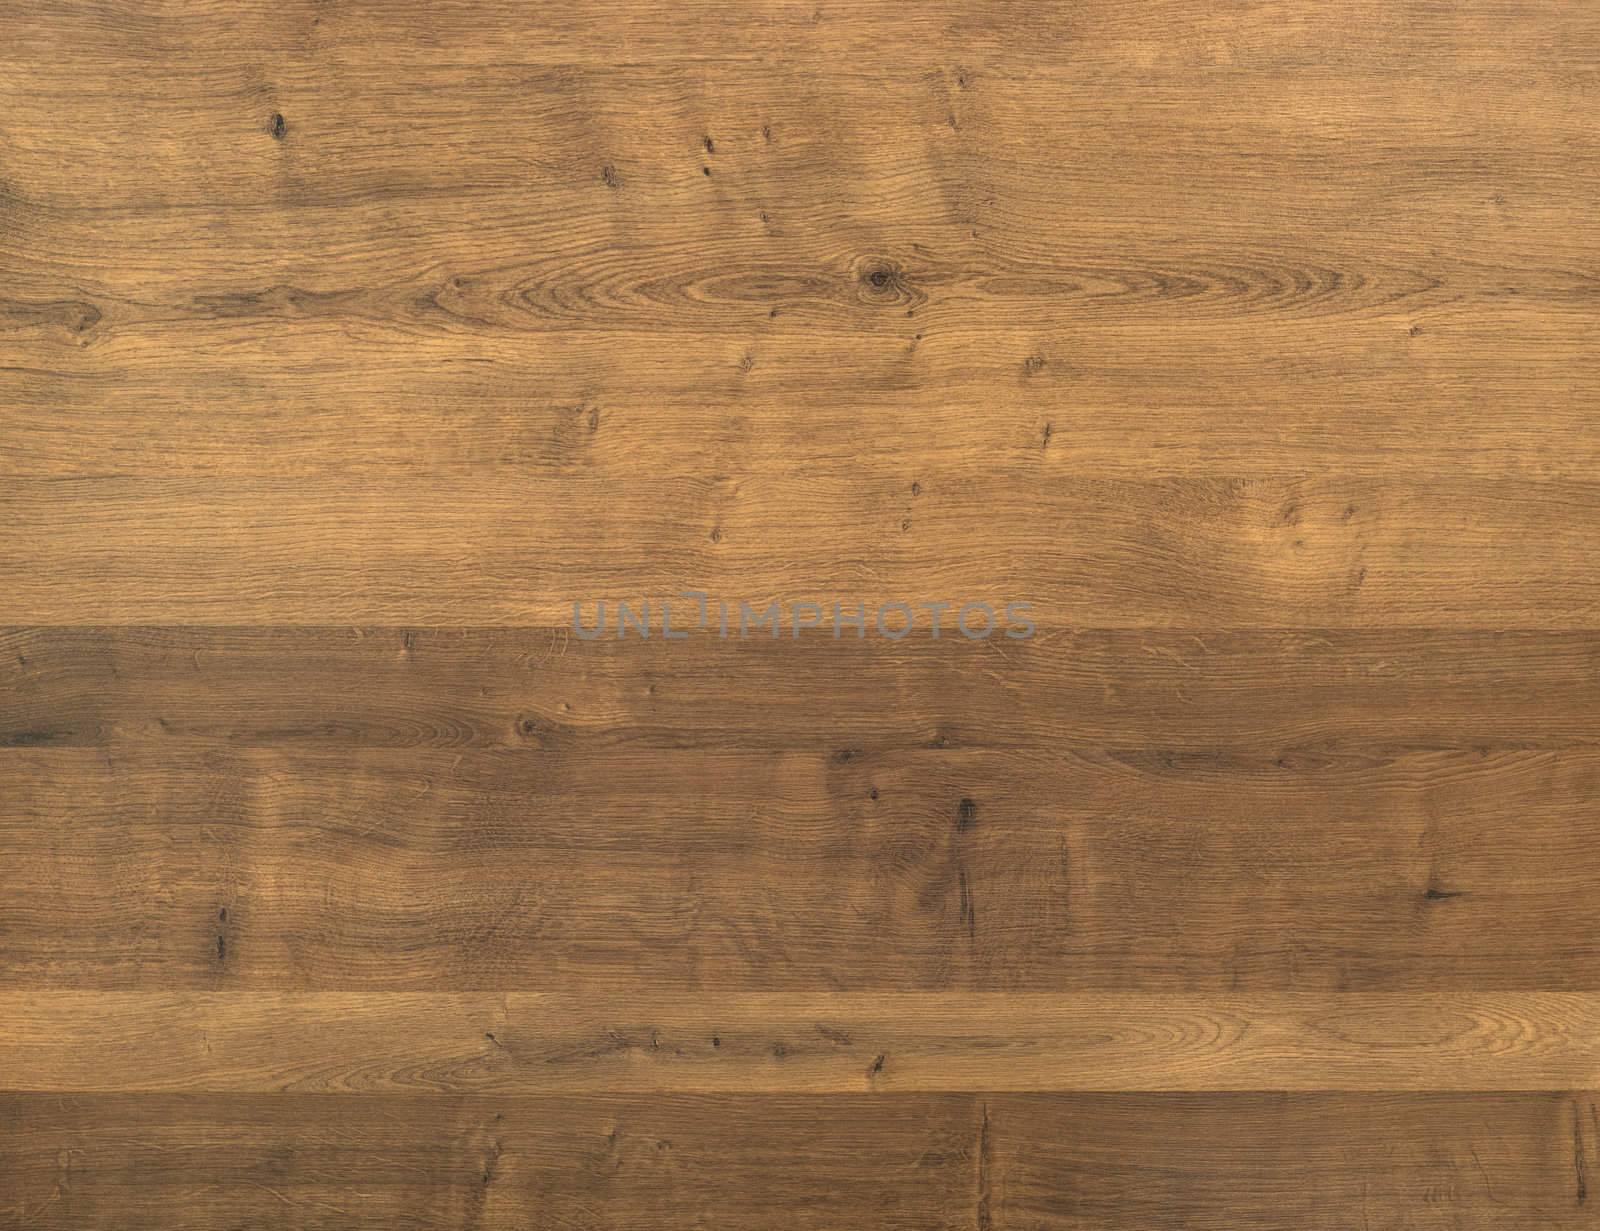 Brown wooden parquet floor planks. Wooden background.